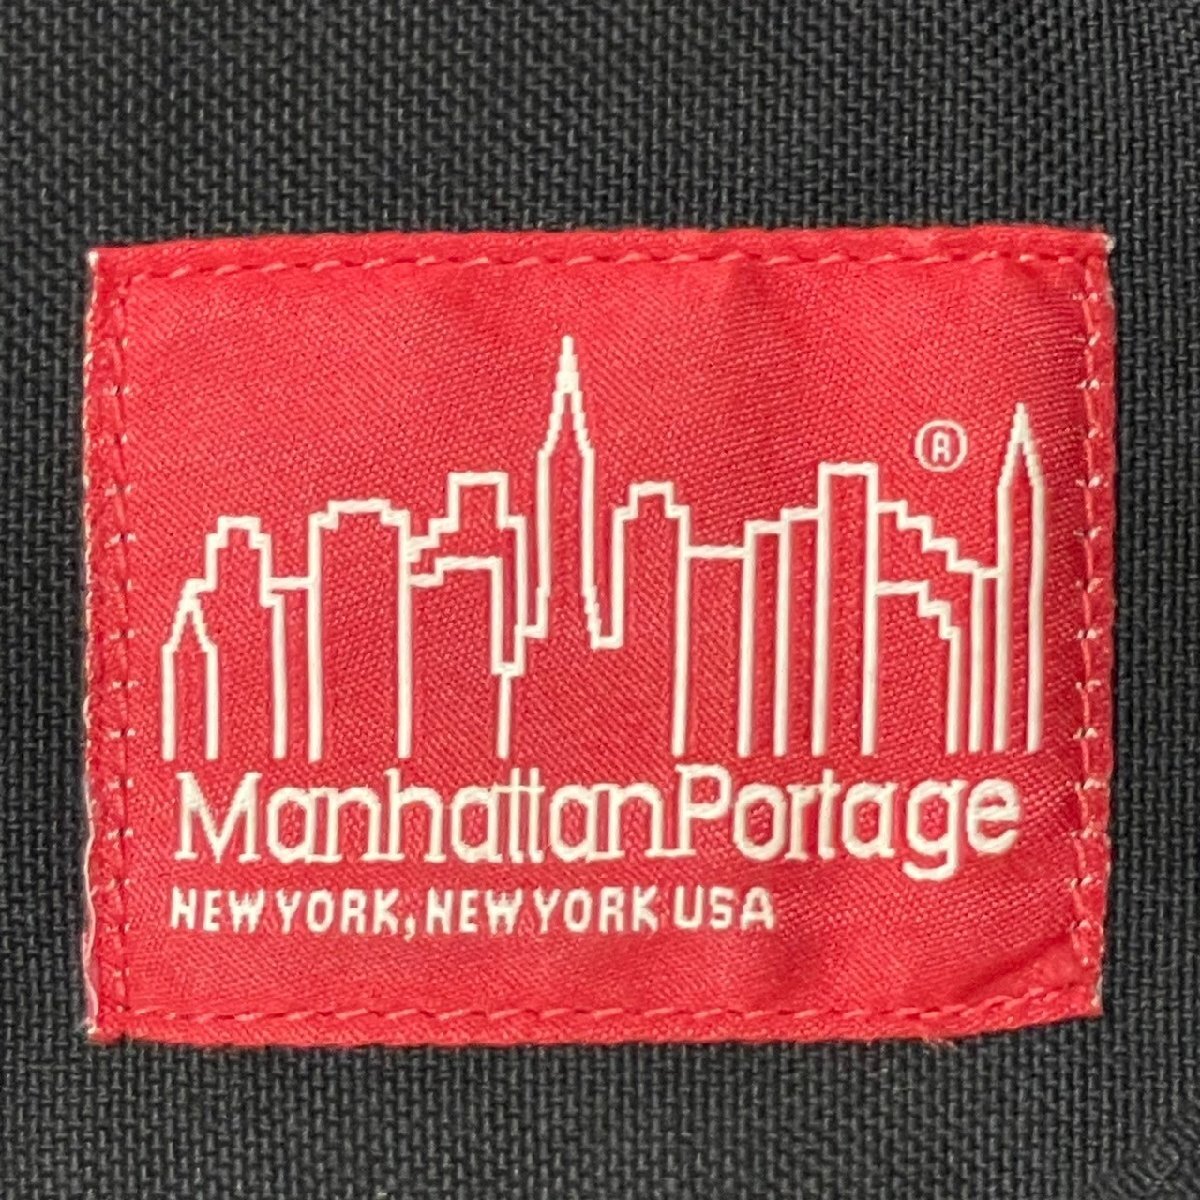 (^w^)b Manhattan Portage Manhattan Poe te-jiCORDURA nylon shoulder messenger bag bag bag BAG black B0465AE